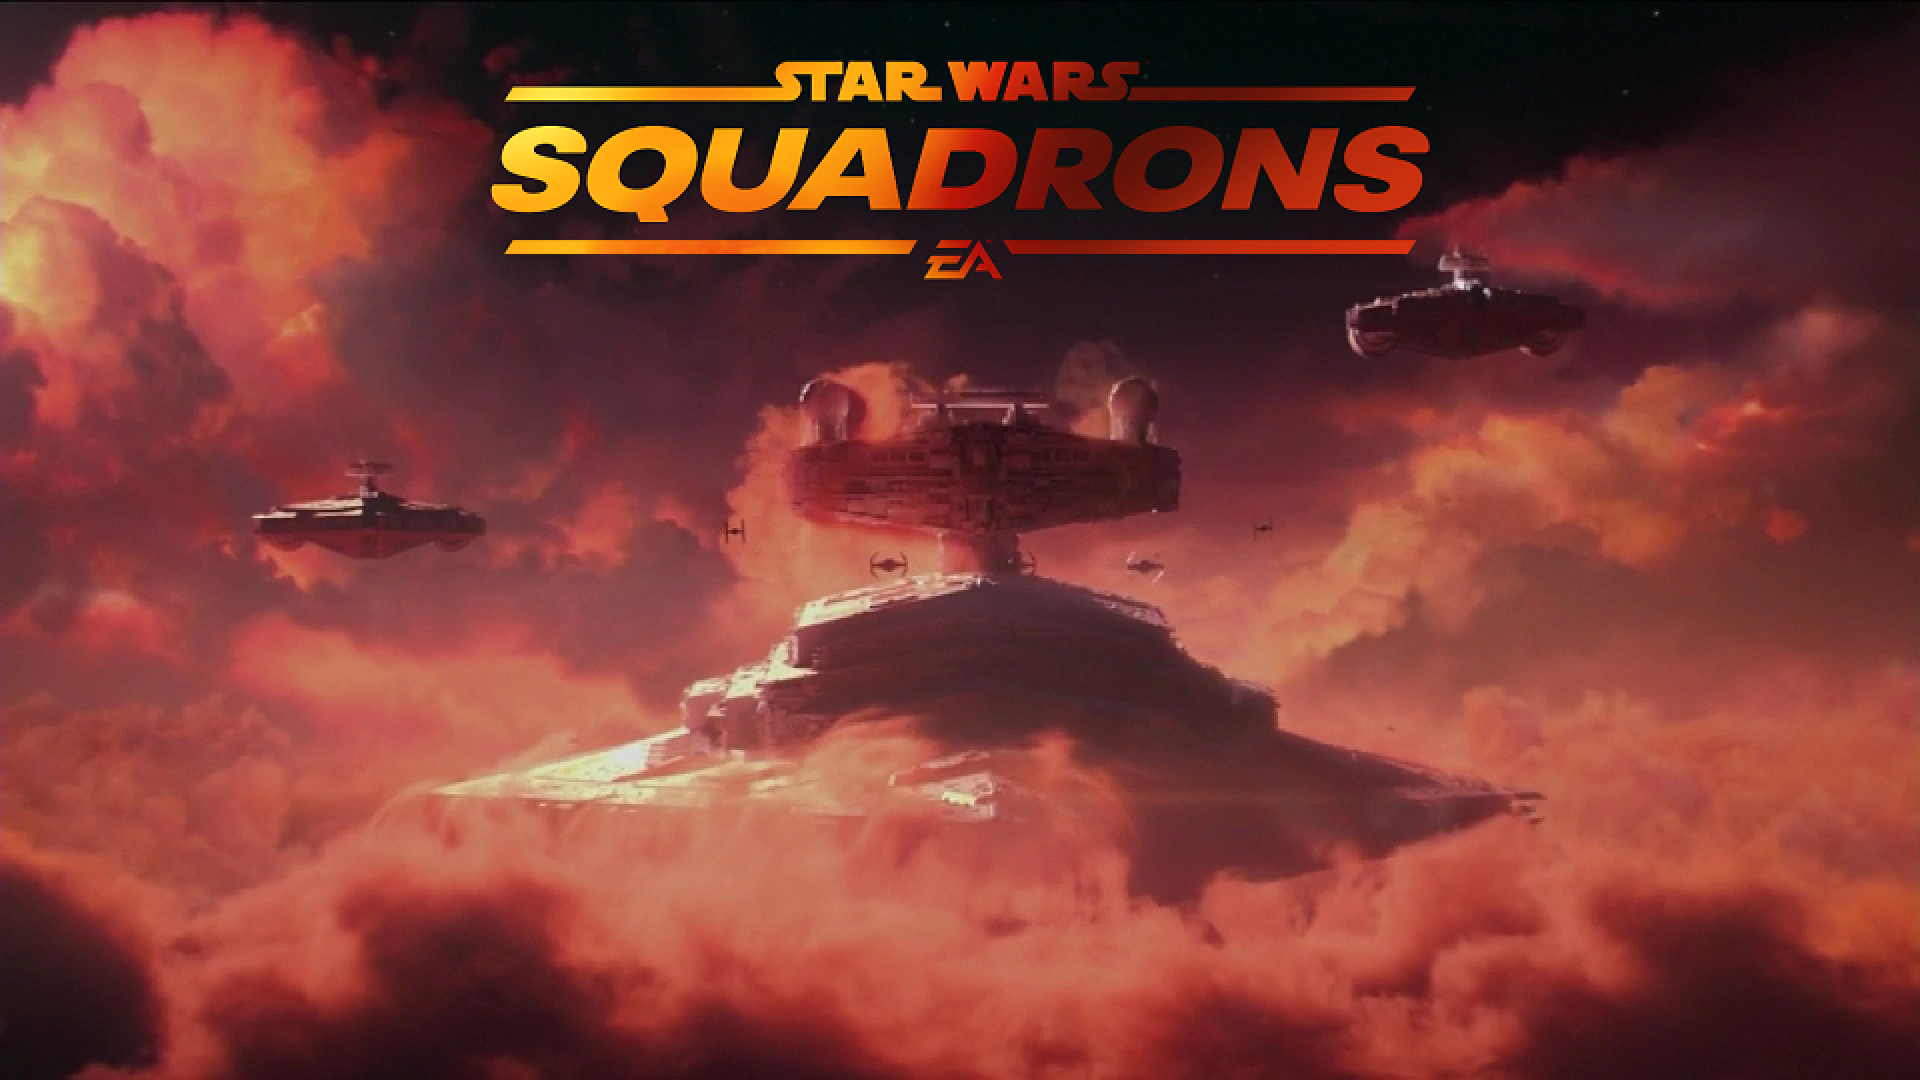 مراسم گیمزکام ۲۰۲۰: جزئیات و تریلر جدیدی از بازی Star Wars: Squadrons منتشر شد